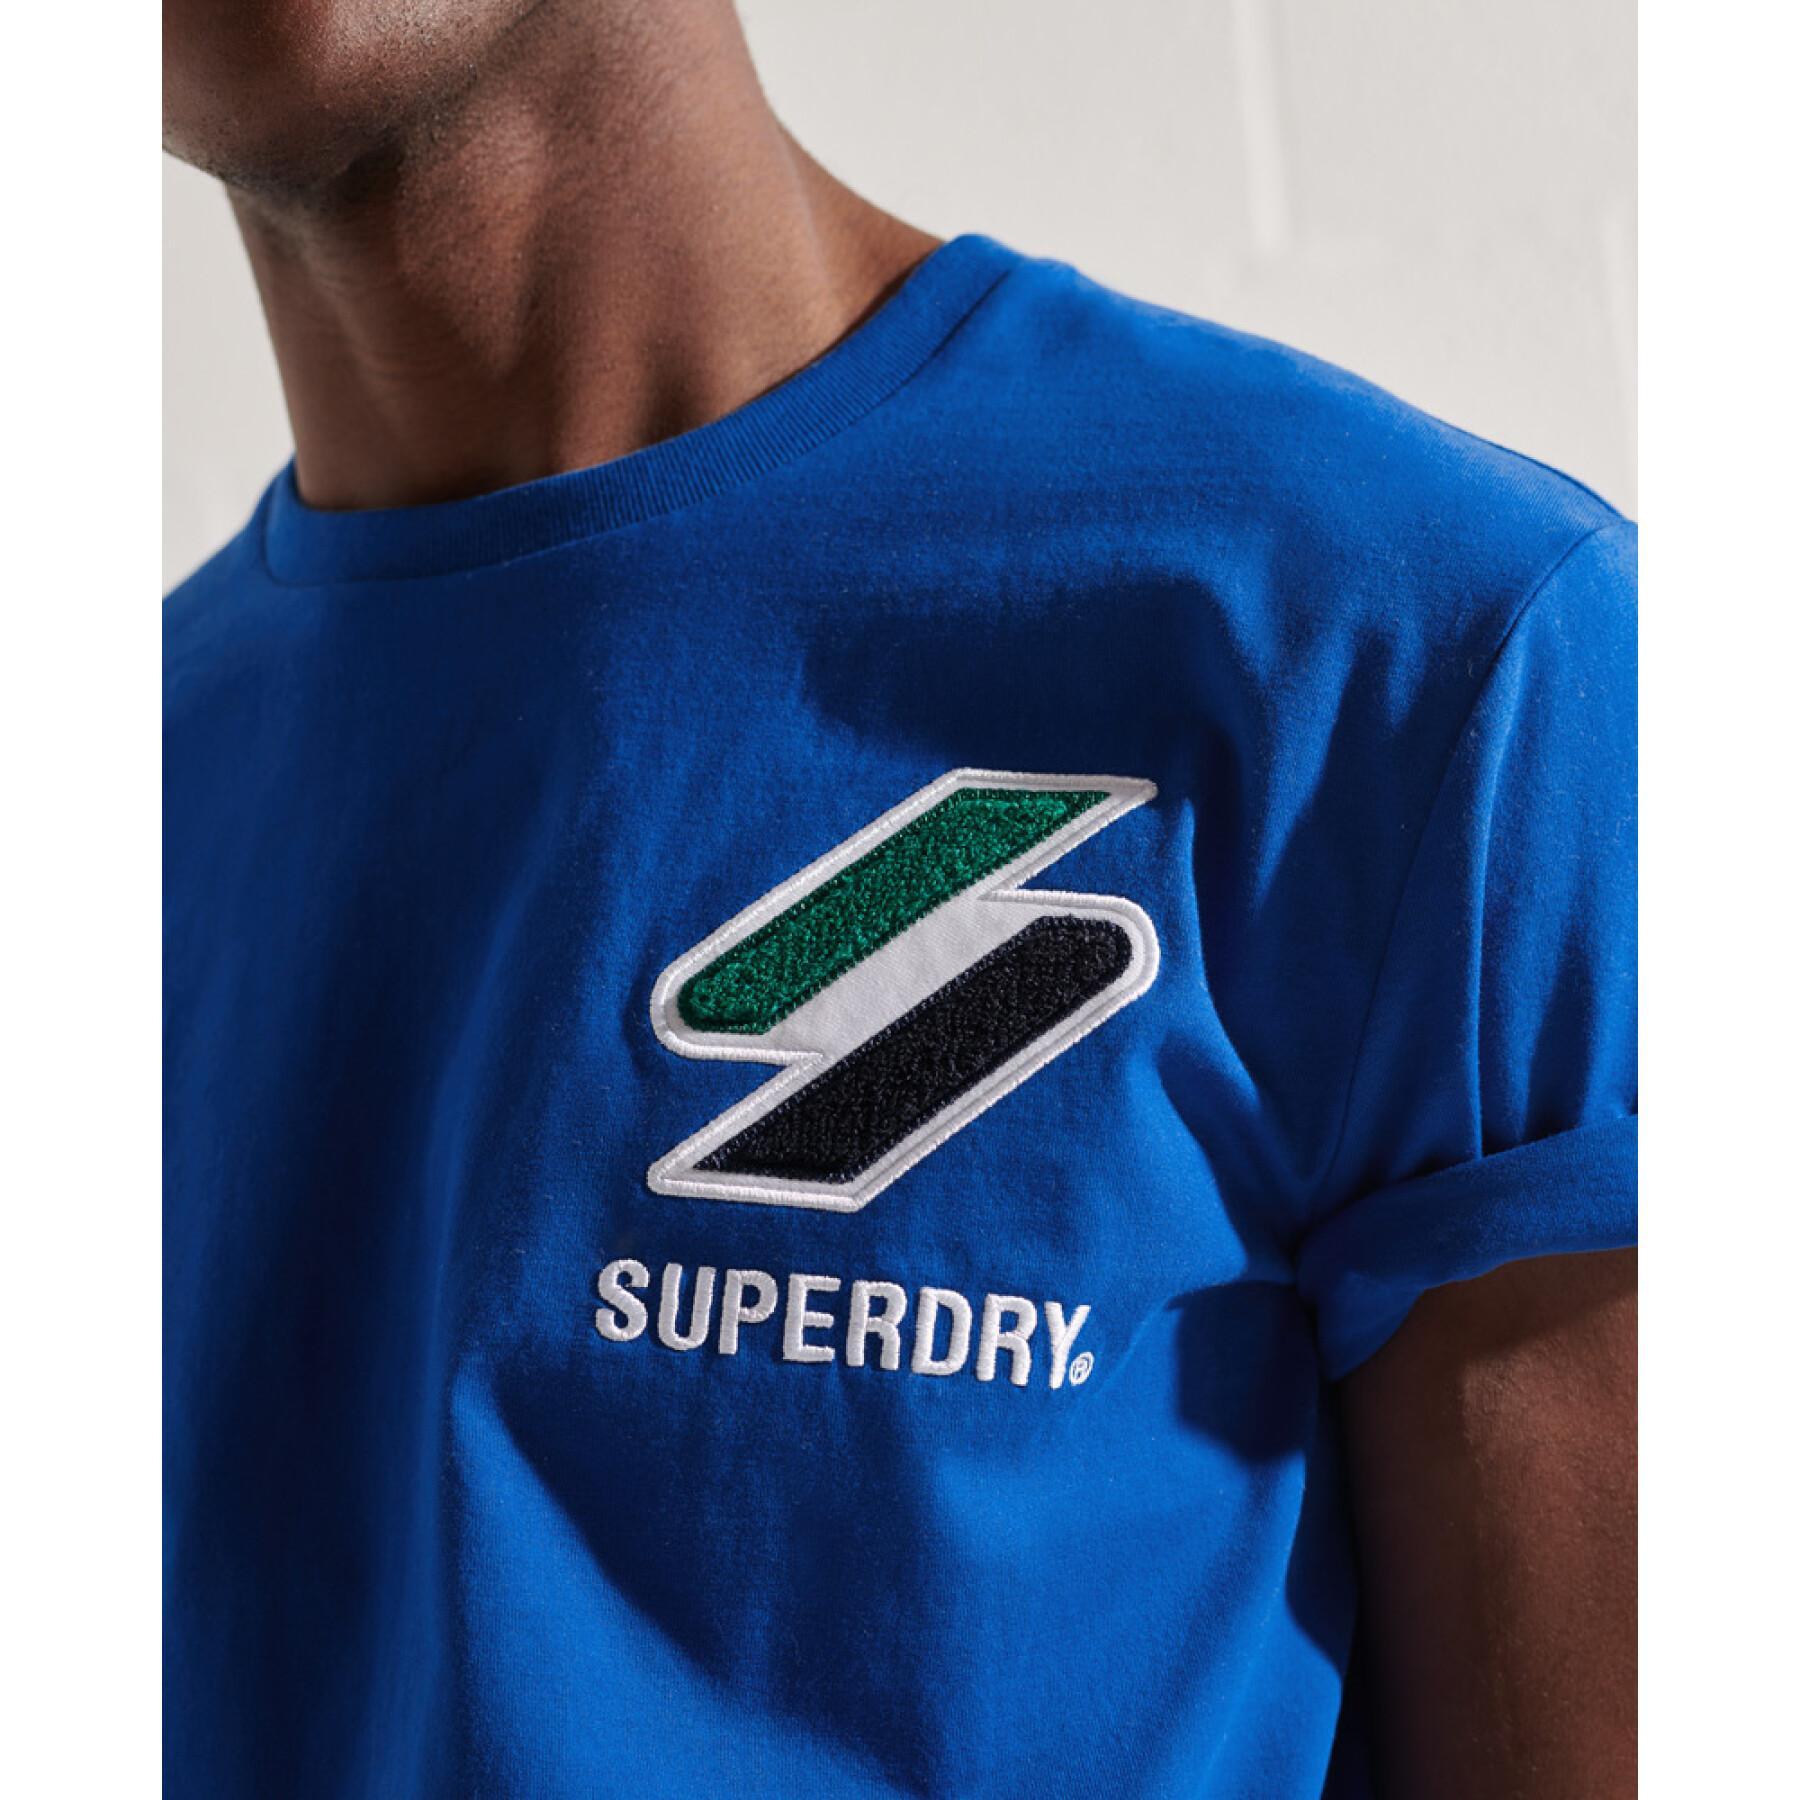 Velvet chenille T-shirt Superdry Sportstyle